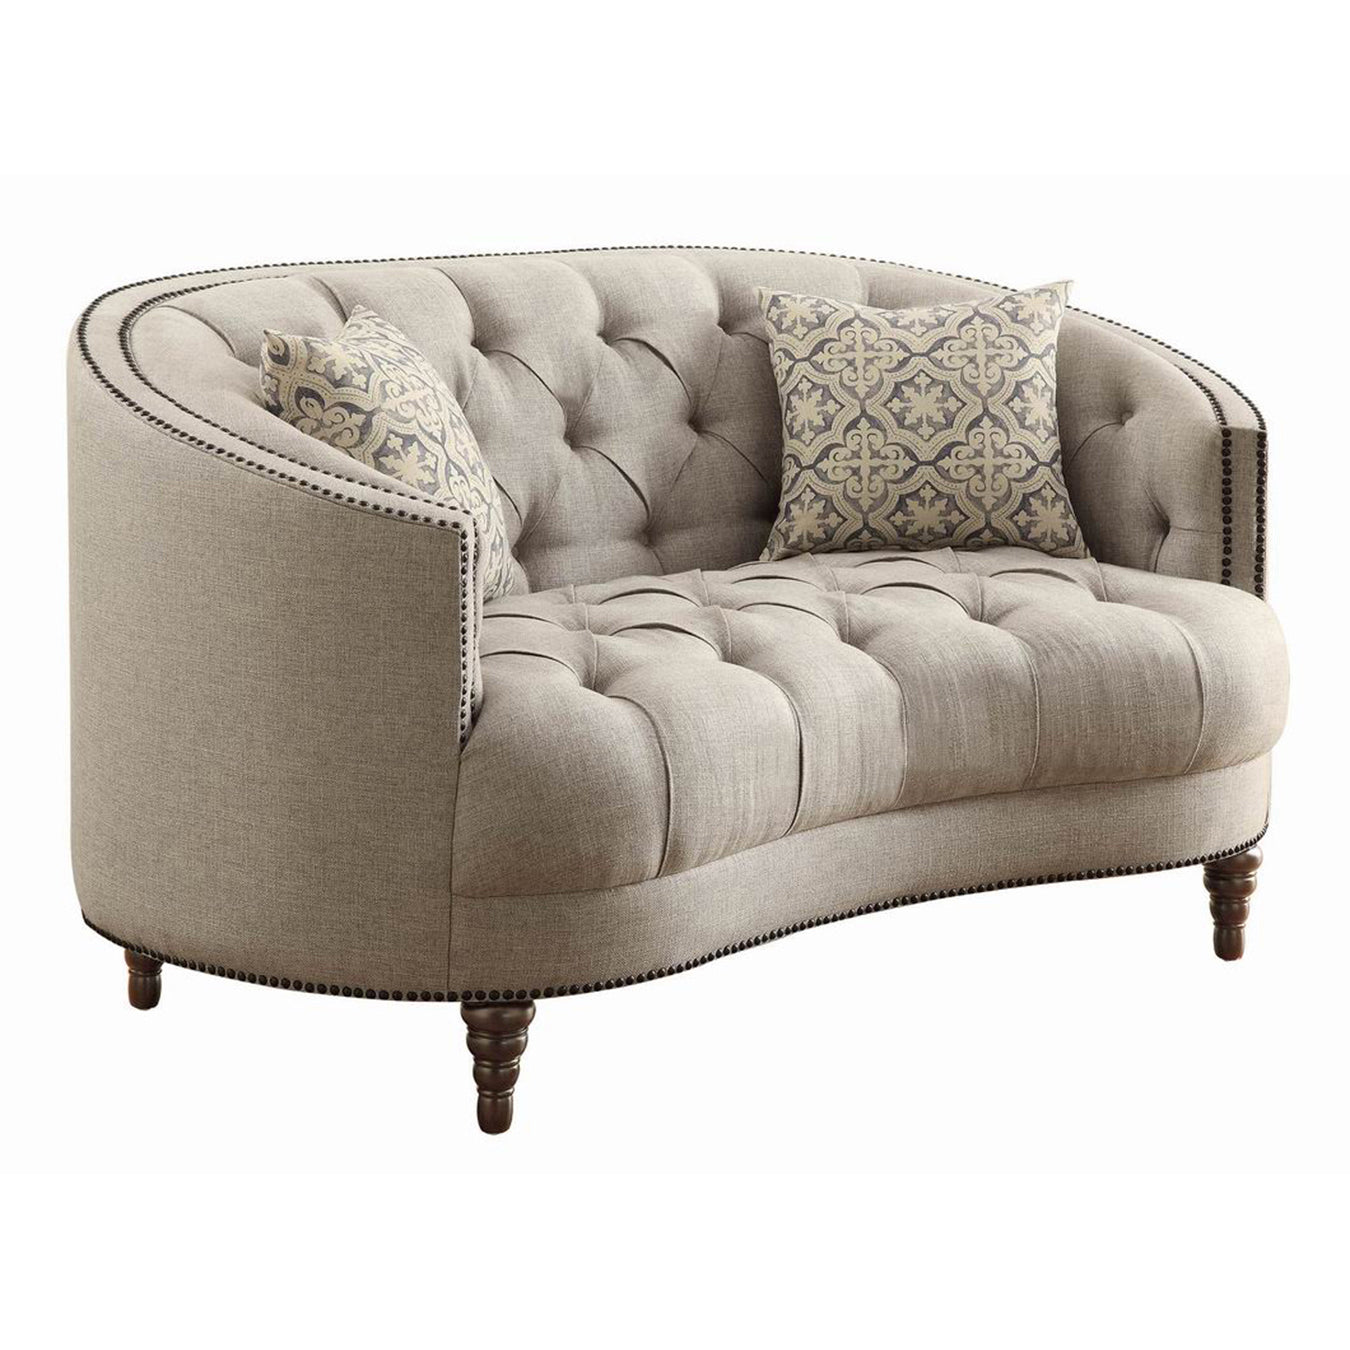 Avonlea Upholstered Tufted Living Room Set Grey - 505641-S3